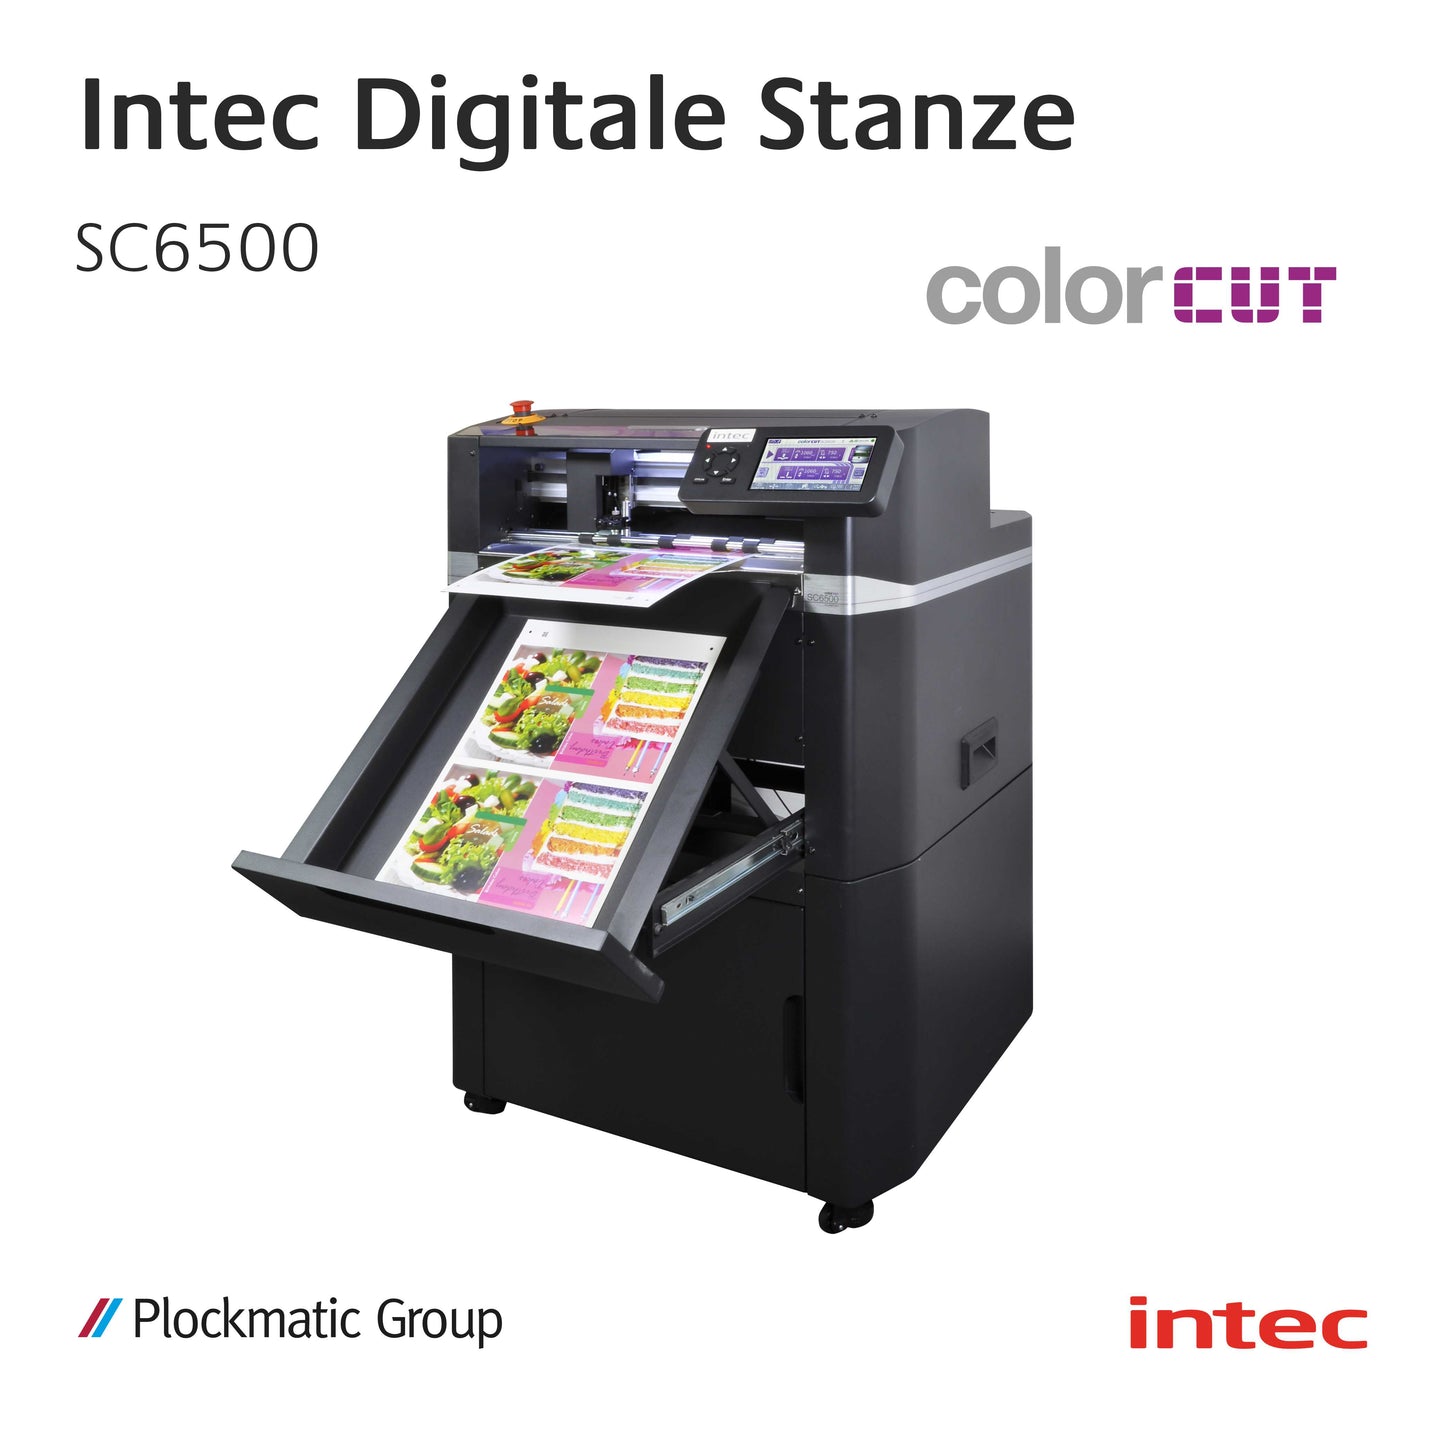 Intec SC6500 - Auto-Feed Digitales Stanzen und Rillen